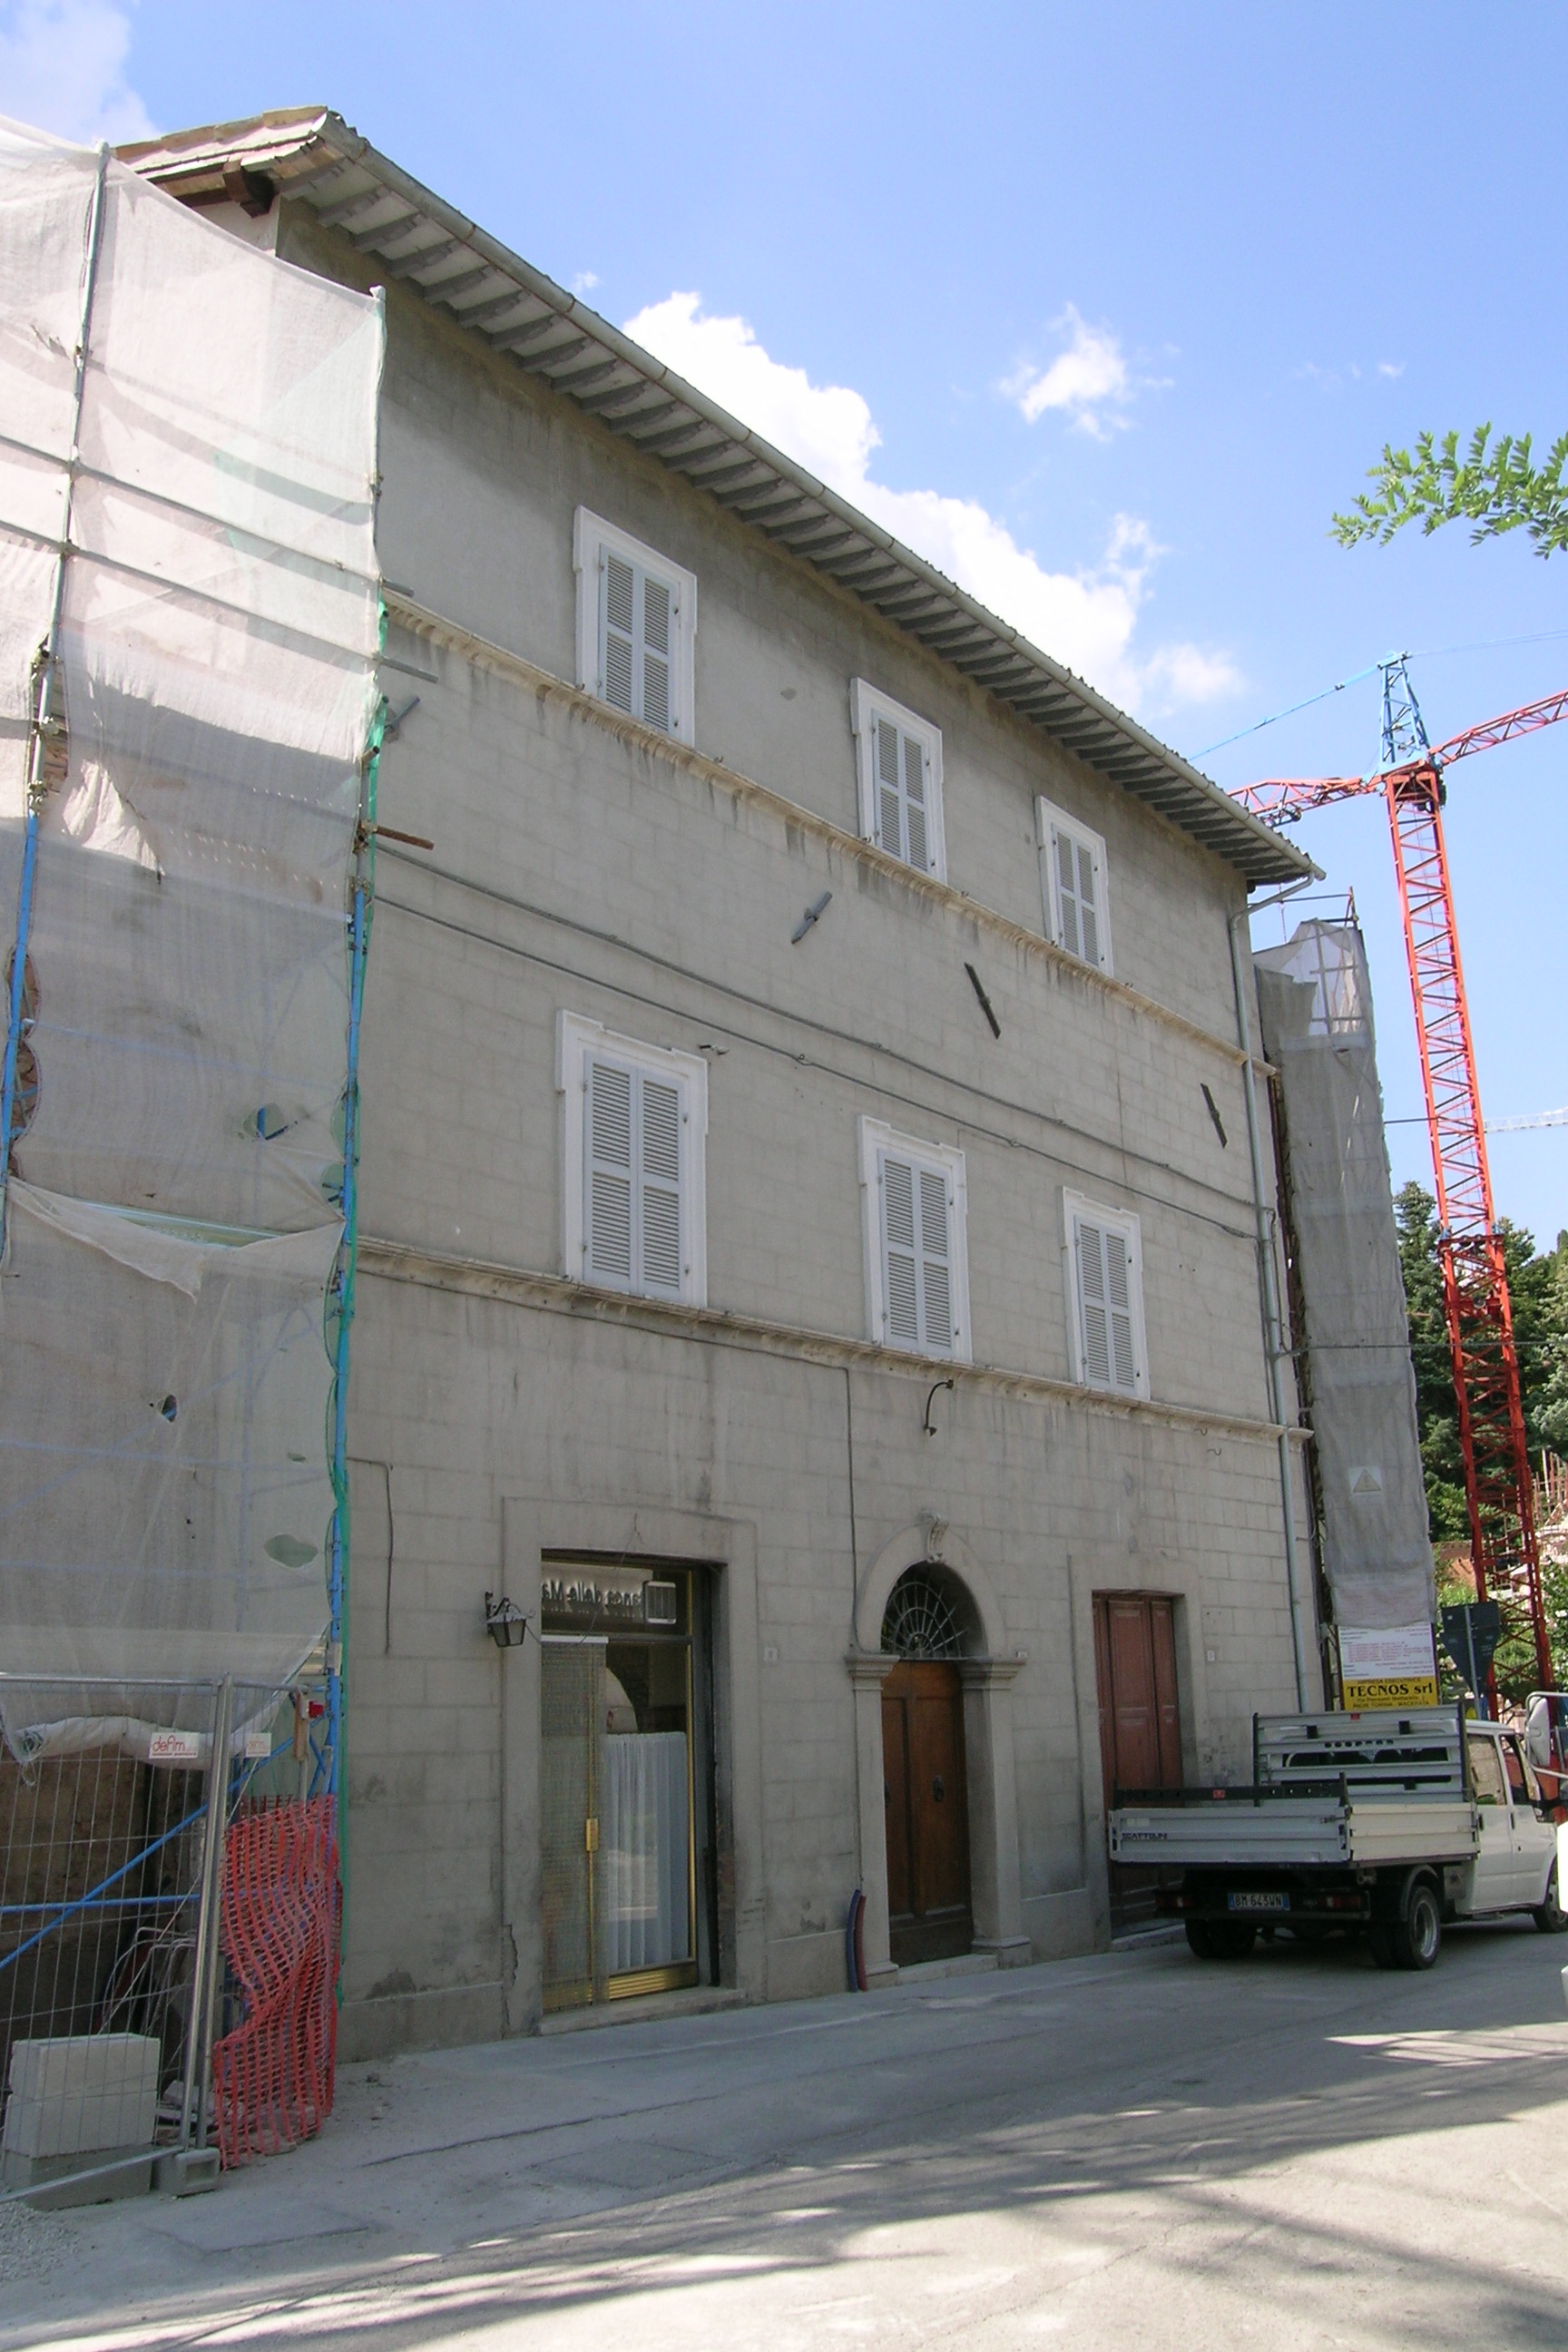 Palazzo di appartamenti (palazzo, di appartamenti) - Pieve Torina (MC) 